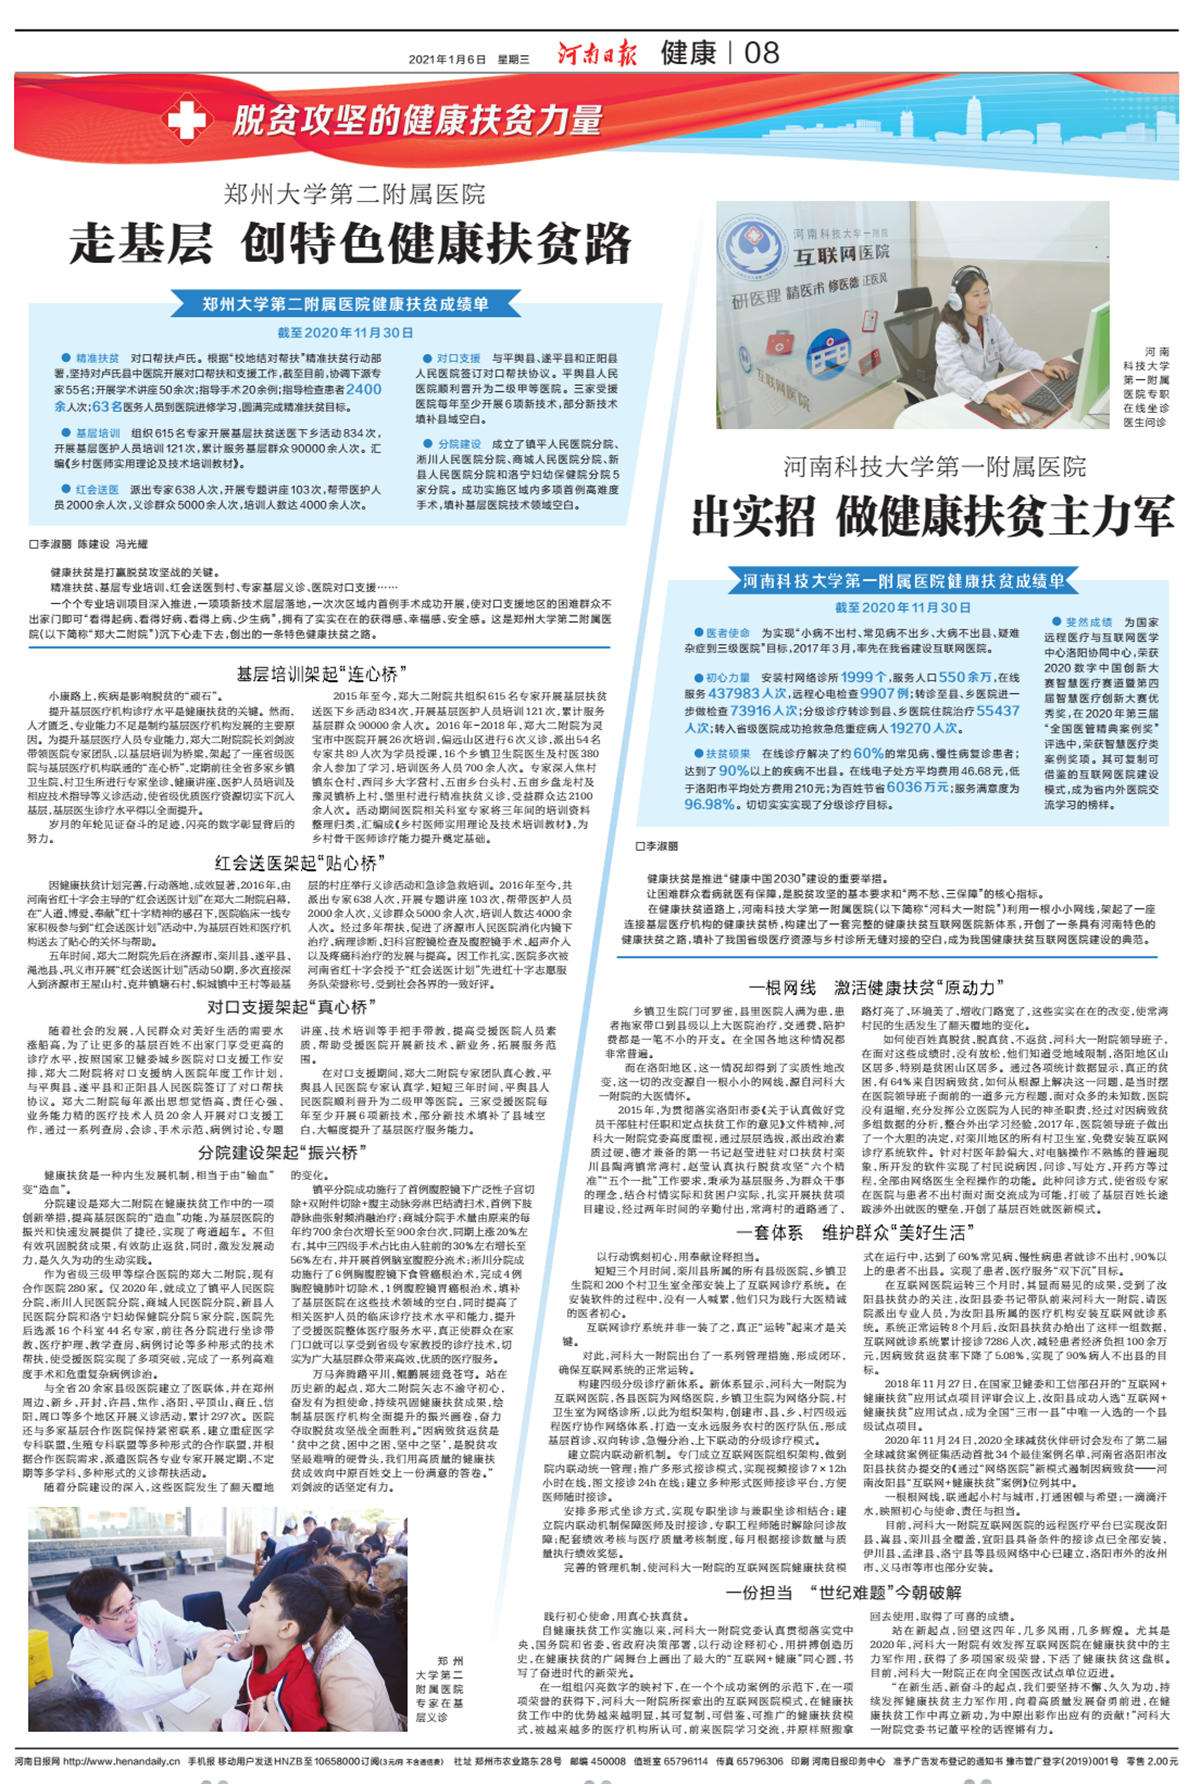 郑州大学第二附属医院走基层创特色健康扶贫路